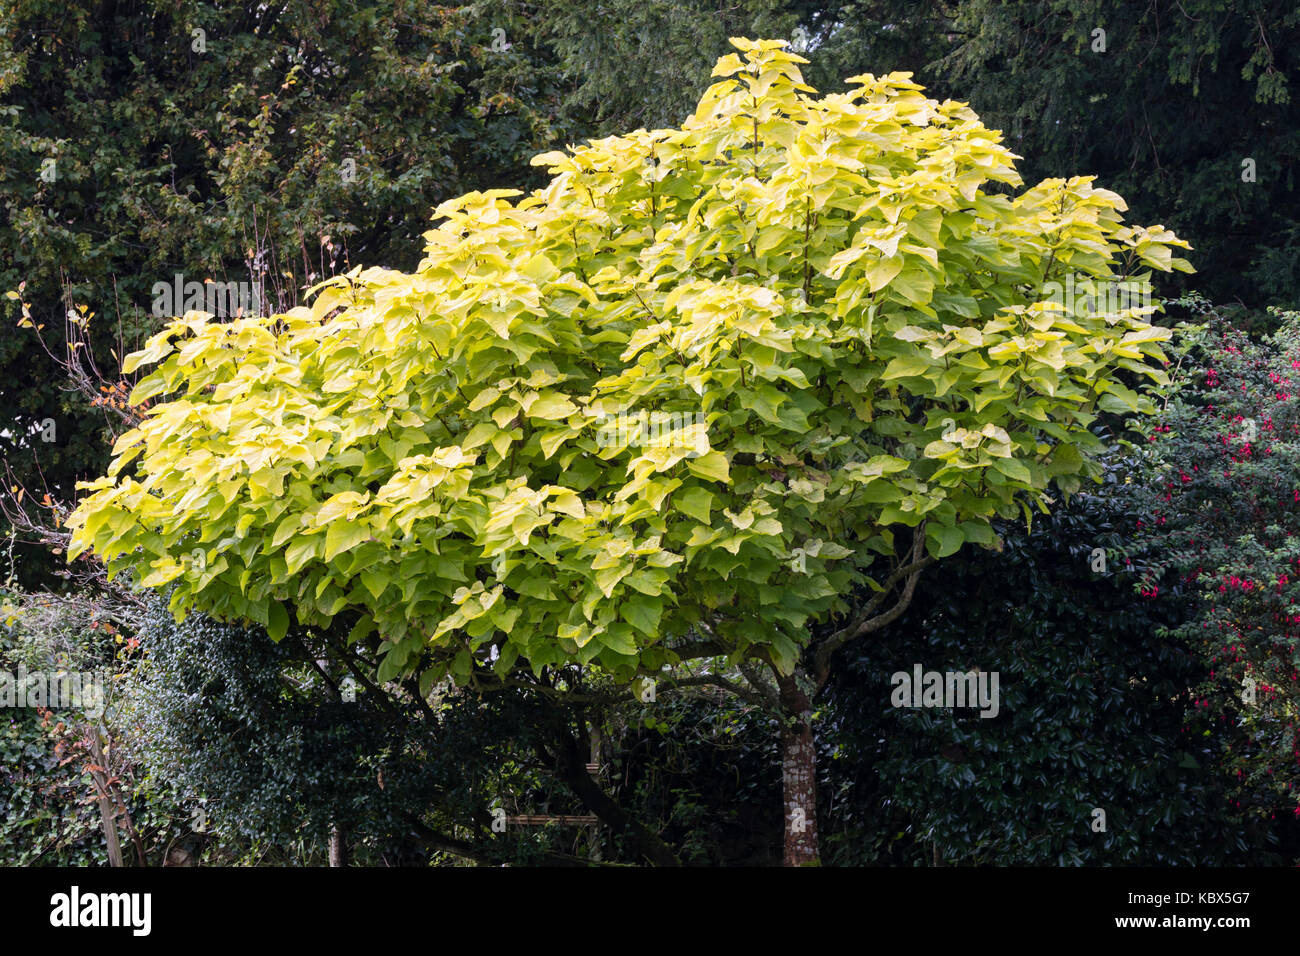 Les feuilles jaune d'or de l'arbre d'ornement exotiques haricot indien, Catalpa bignonioides 'Aurea' Banque D'Images